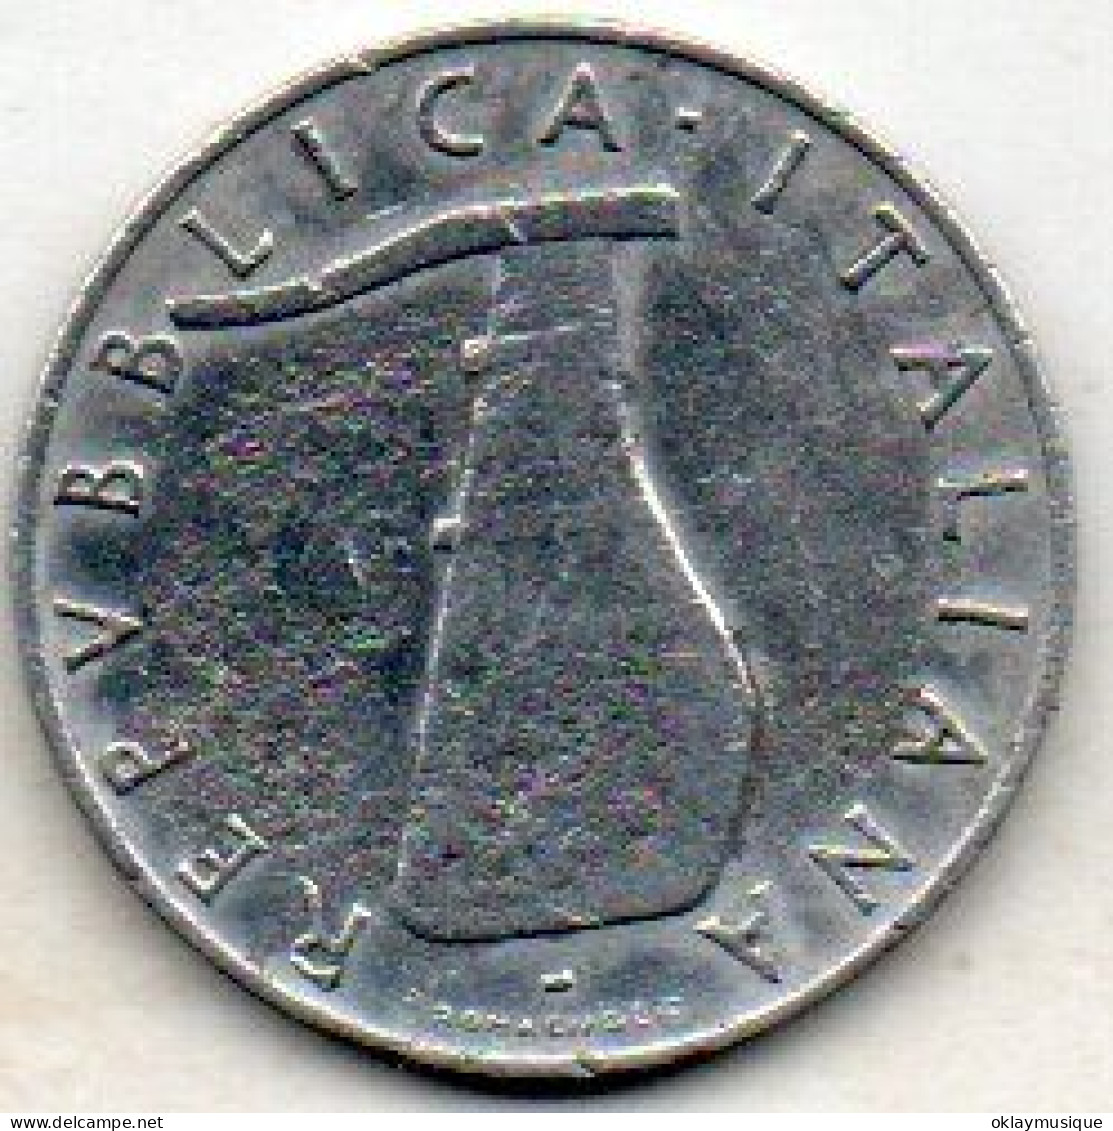 5 Lires 1955 - 5 Liras